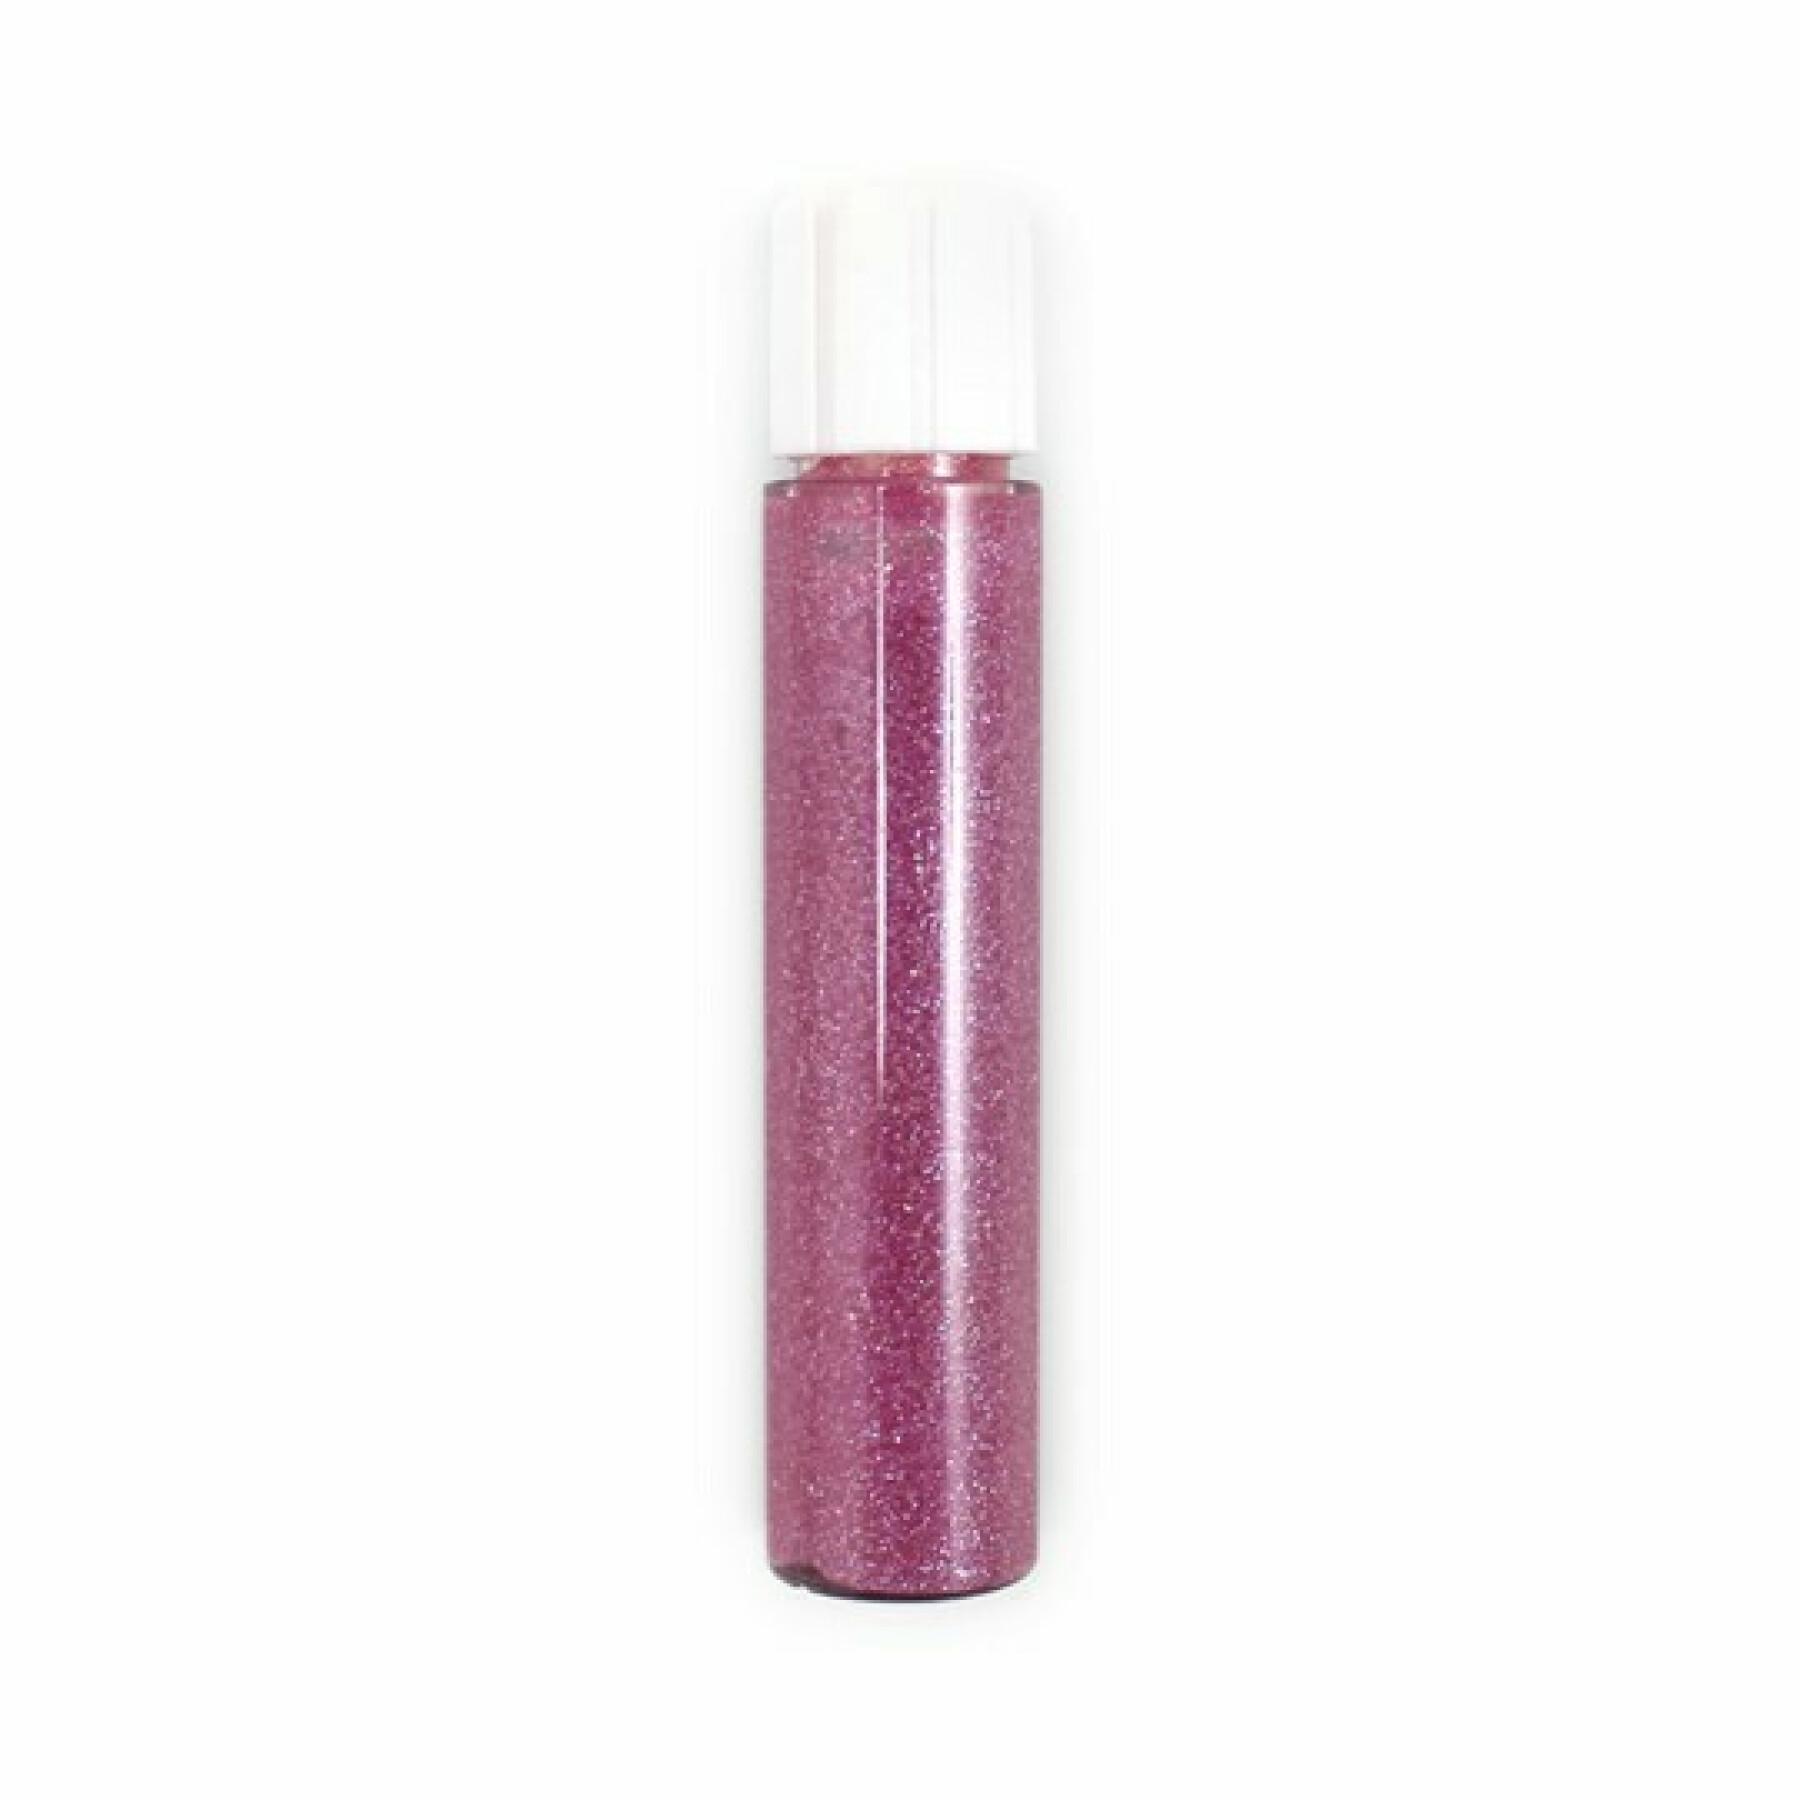 Refill gloss 011 pink woman Zao - 3,8 ml